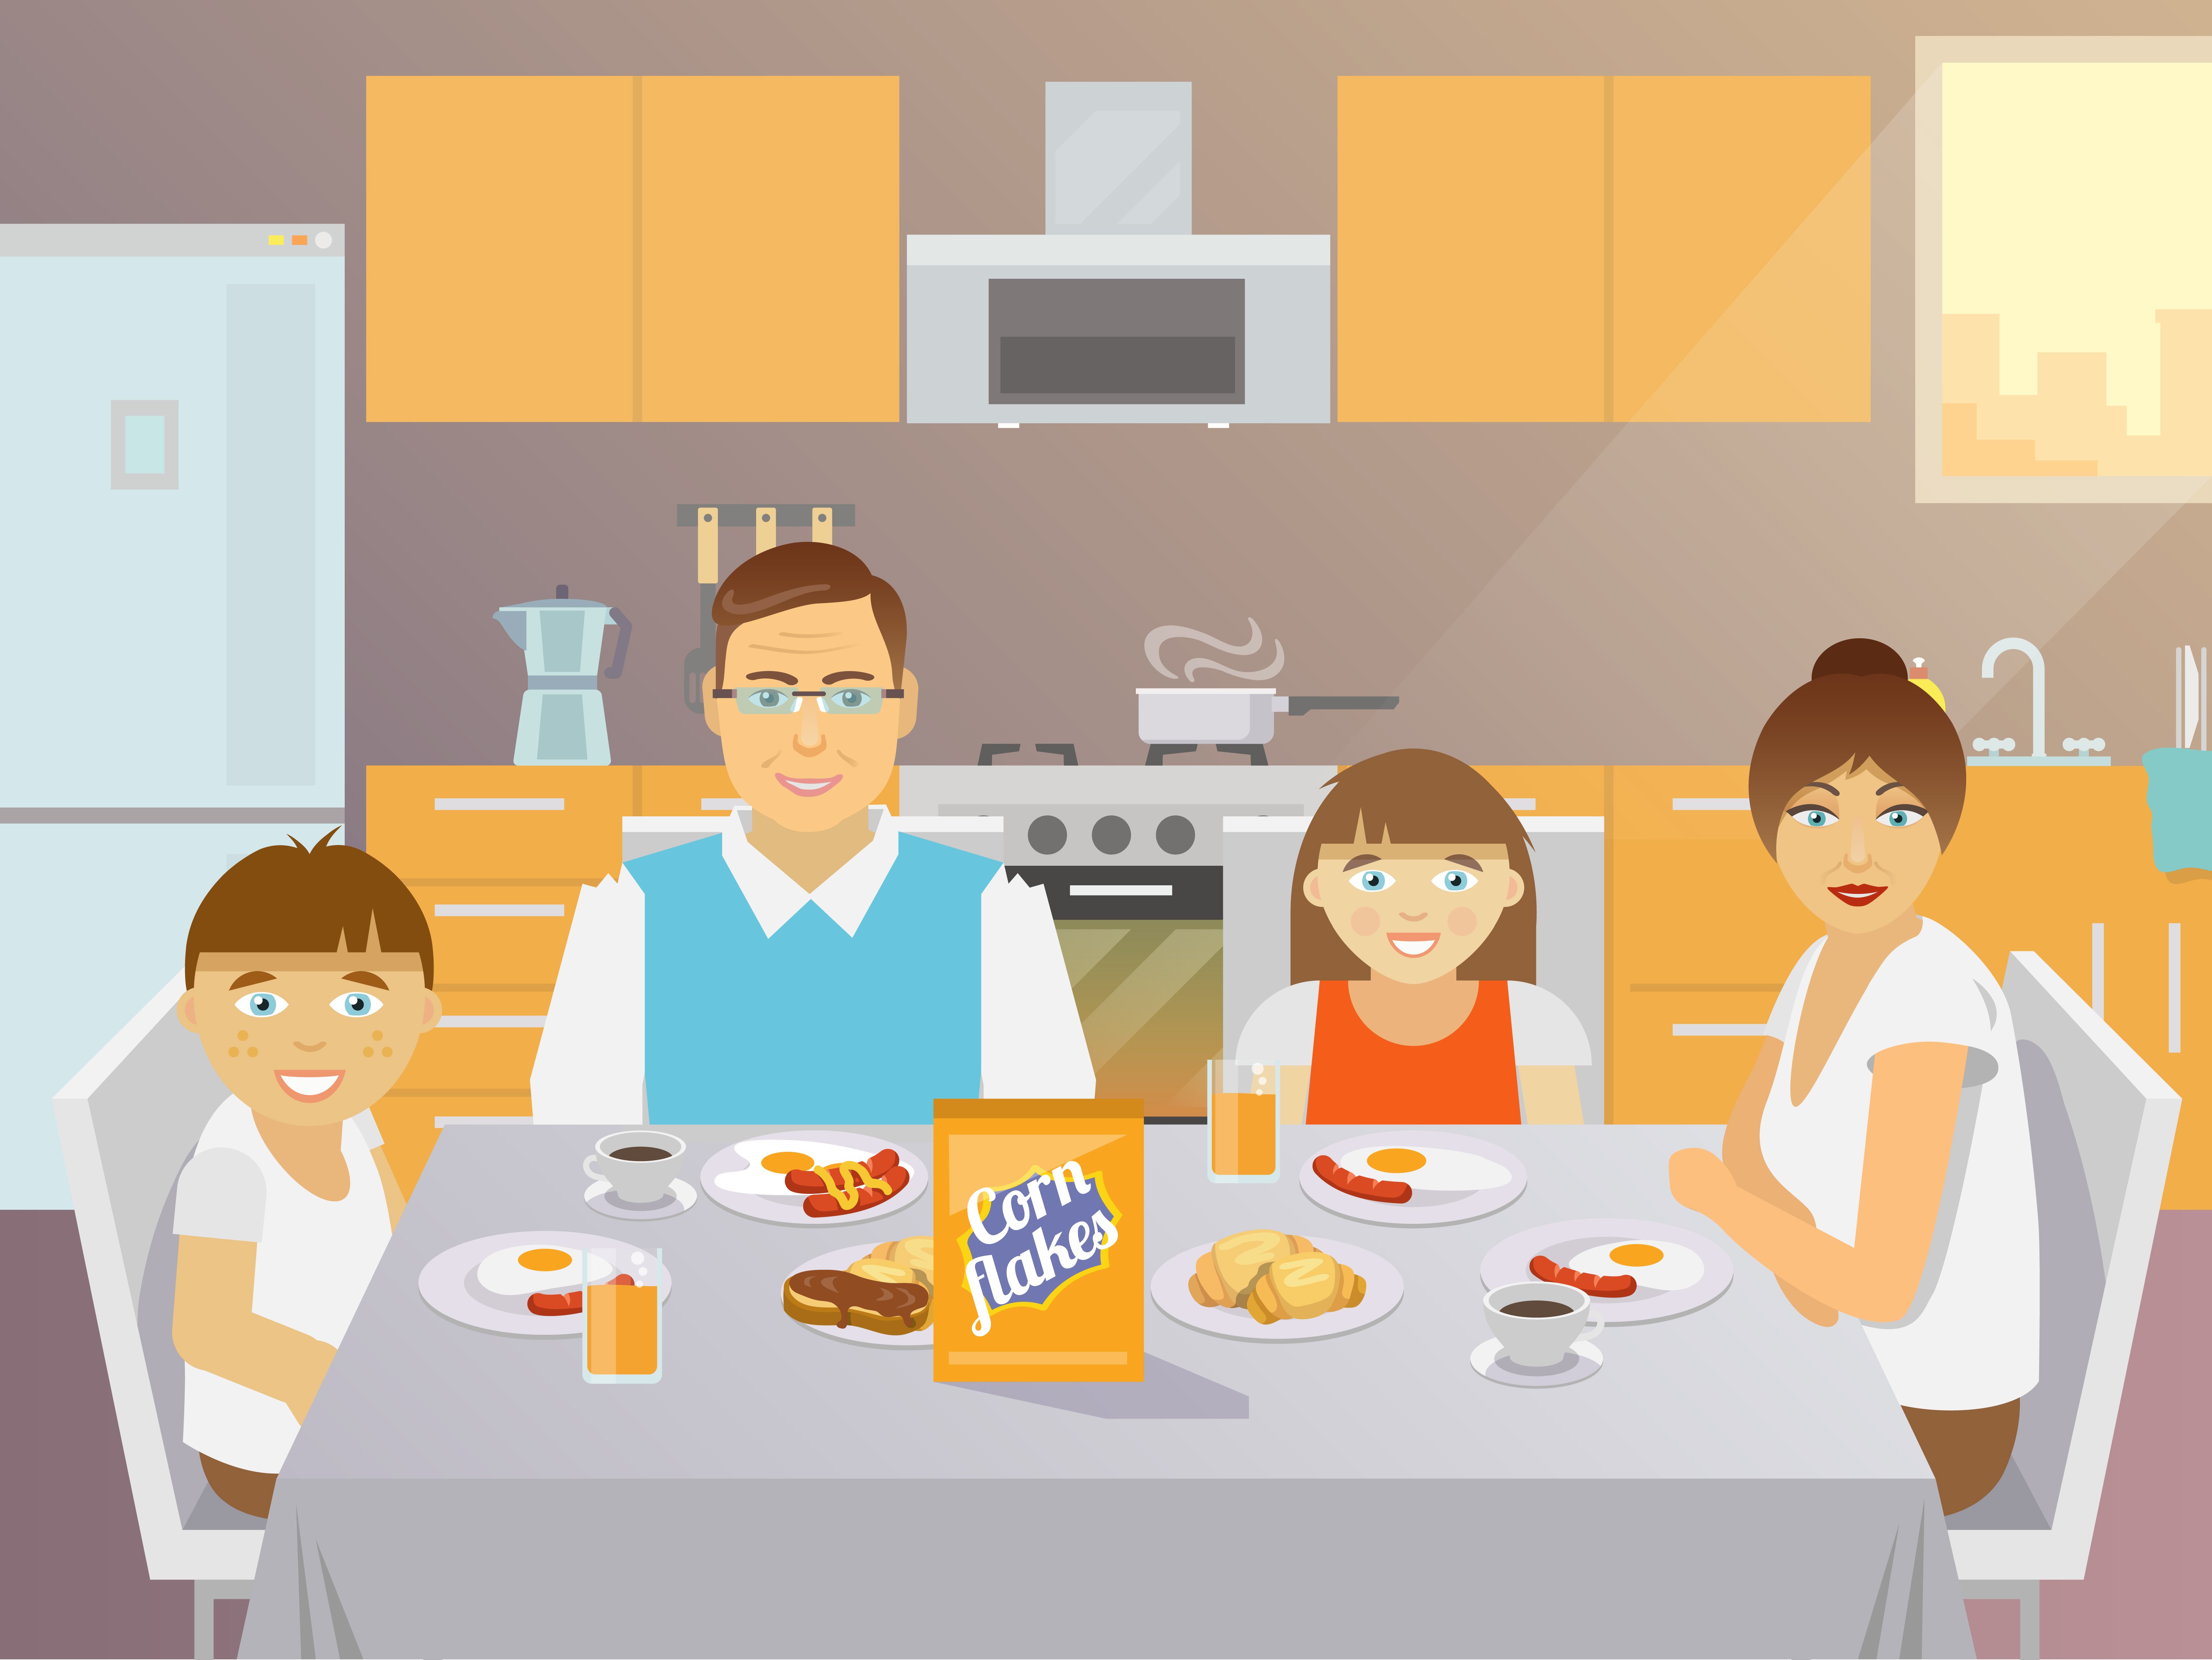 Позавтракав мама и папа отправились за покупками. Семья за столом иллюстрация. Семейный завтрак иллюстрация. Иллюстрация семья за столом на кухне. Семья за столом картинки для детей.